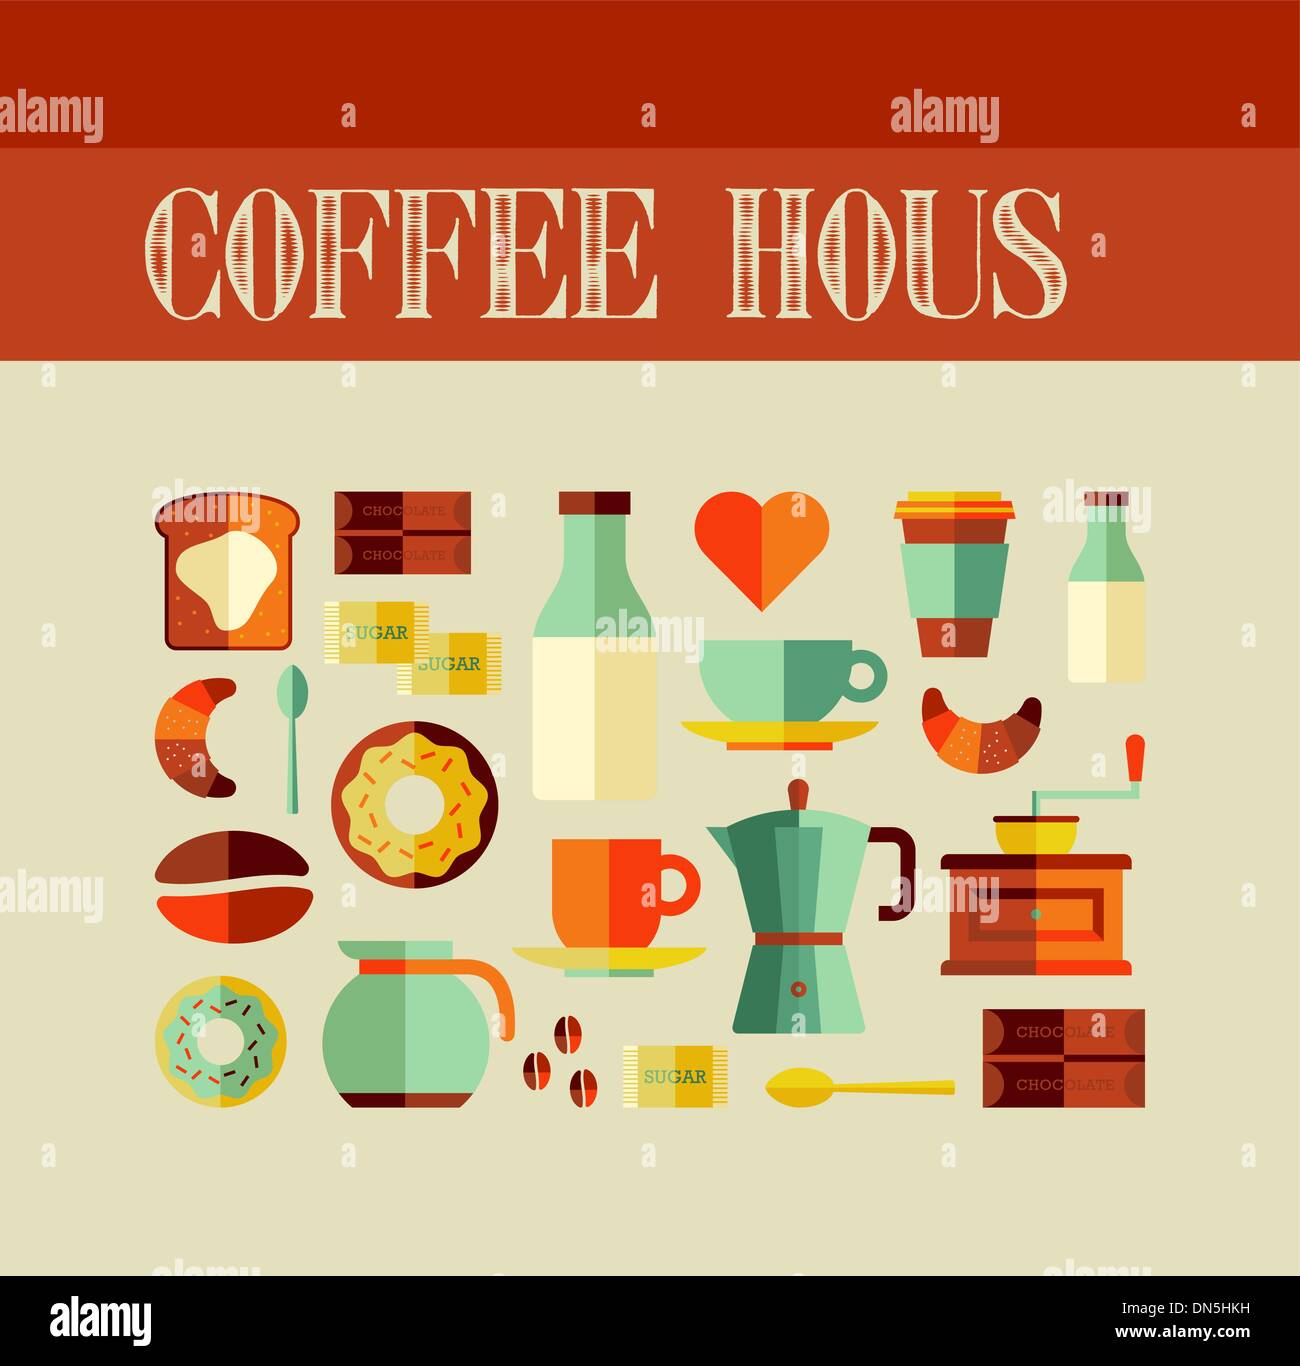 Coffee House concept Illustrazione Vettoriale